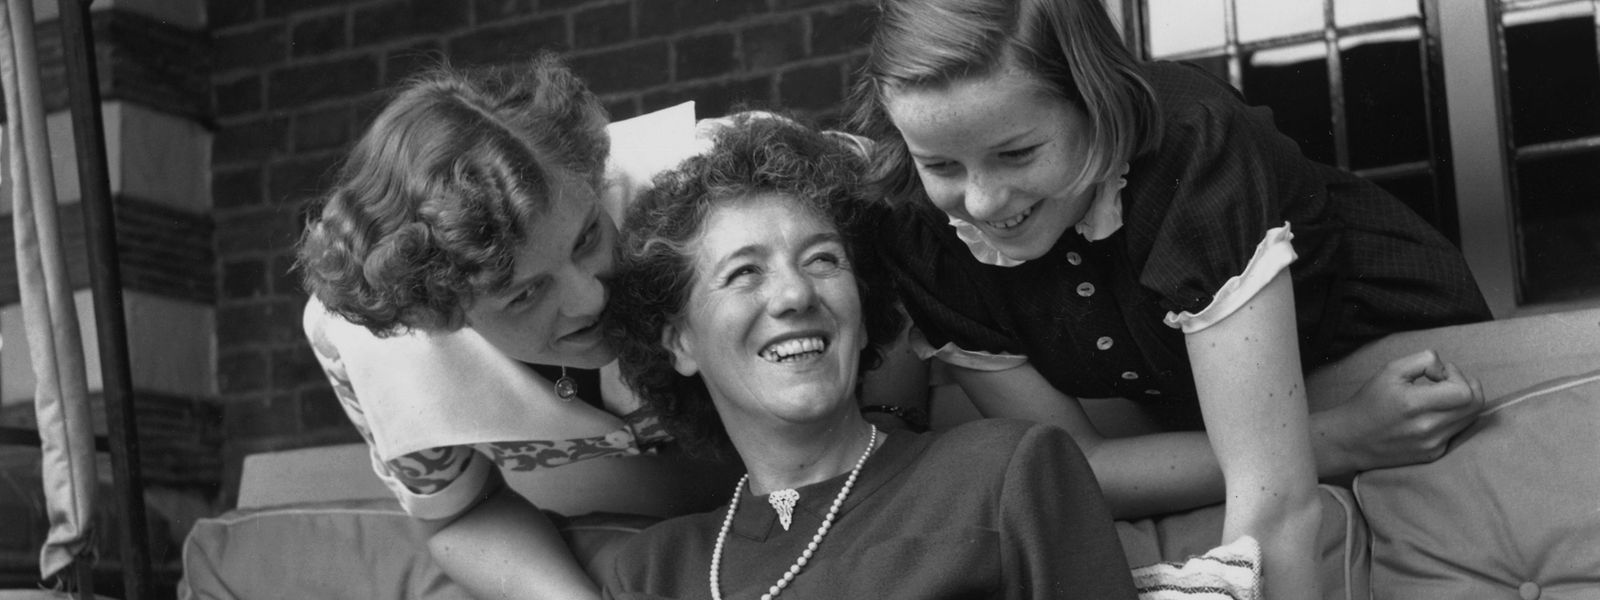 Enid Blyton mit ihren beiden Töchtern Gillian (links) und Imogen (rechts) in ihrem Haus in Beaconsfield. Als die Kinderbuchautorin selbst Mutter wurde, habe sie sich im Kinderzimmer selten blicken lassen, schrieb Tochter Imogen später. 